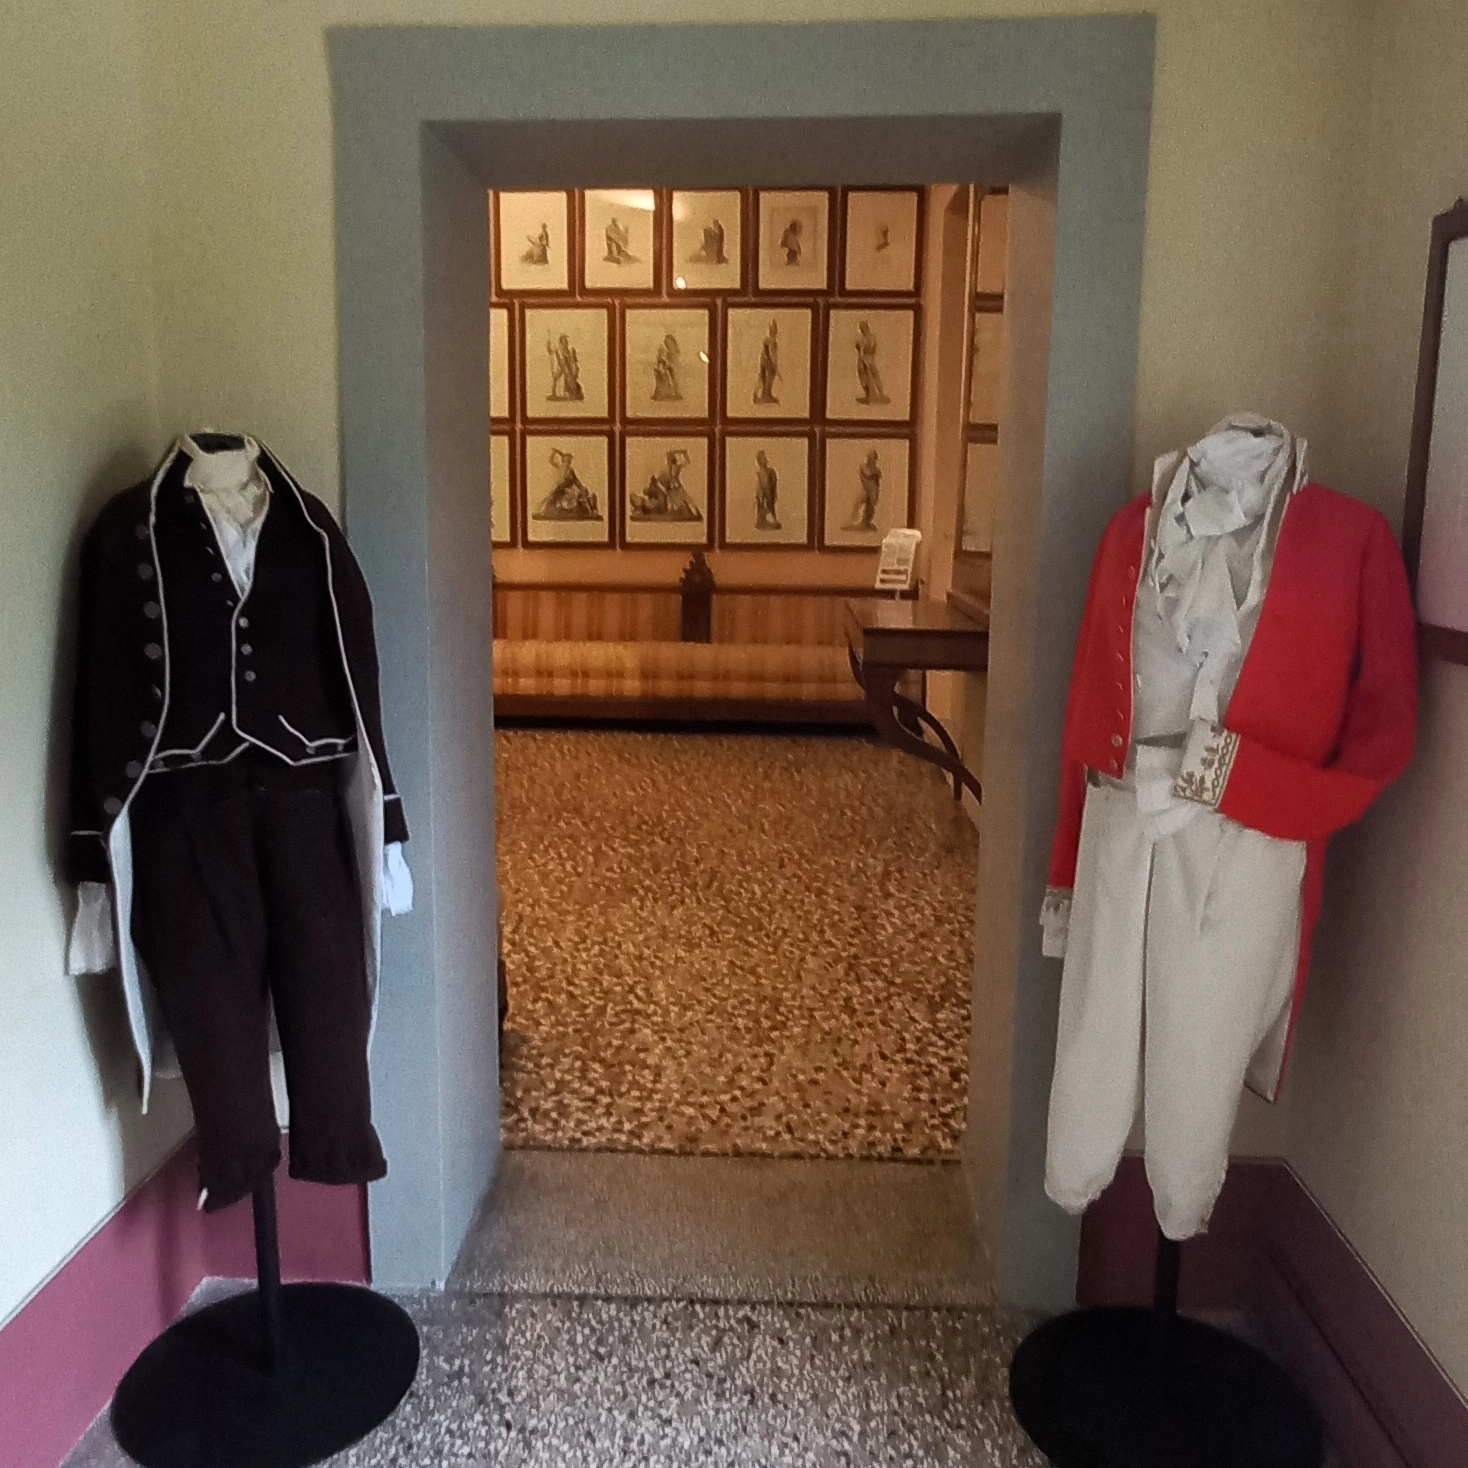 Alcuni abiti già esposti nella casa museo di Antonio Canova